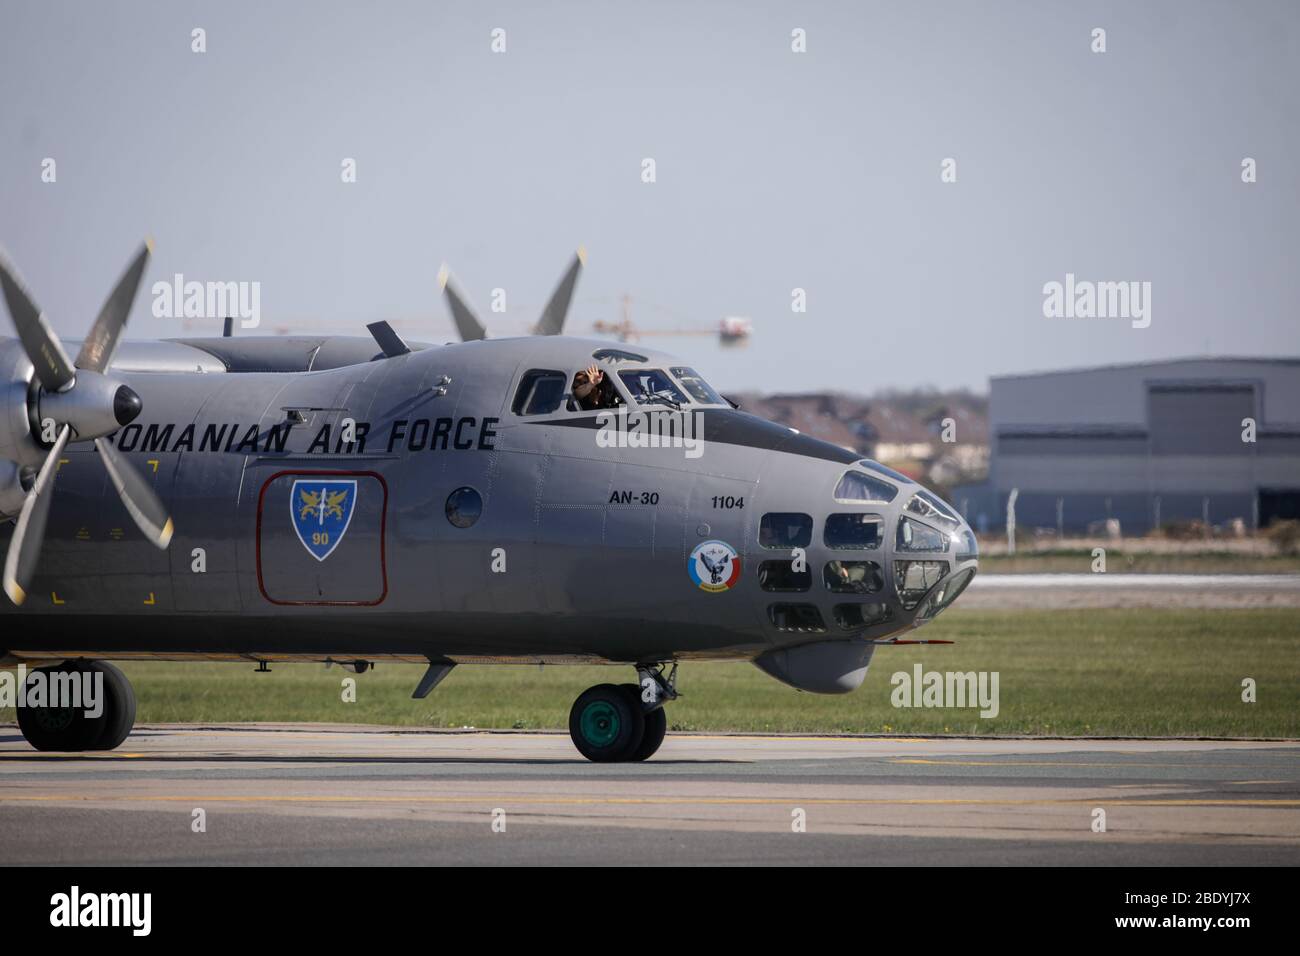 Otopeni, Roumanie - 8 avril 2020: Antonov an-30 avion militaire de l'armée de l'air roumaine à l'aéroport international Henri Coanda. Banque D'Images